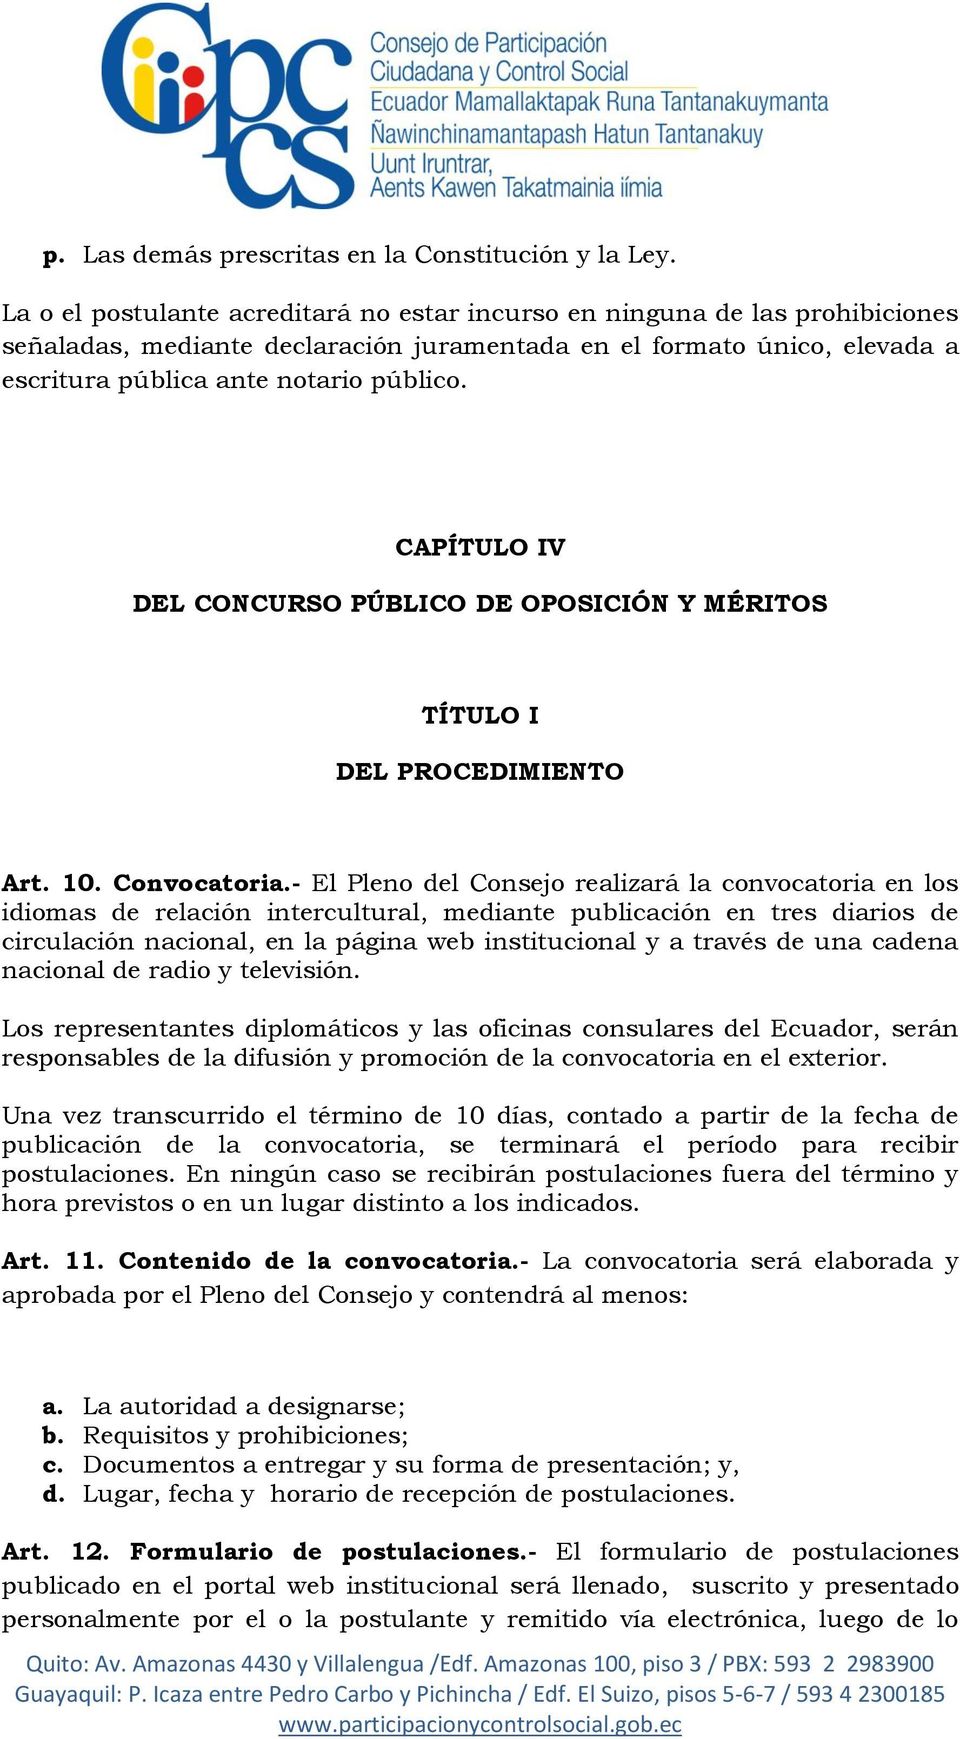 CAPÍTULO IV DEL CONCURSO PÚBLICO DE OPOSICIÓN Y MÉRITOS TÍTULO I DEL PROCEDIMIENTO Art. 10. Convocatoria.